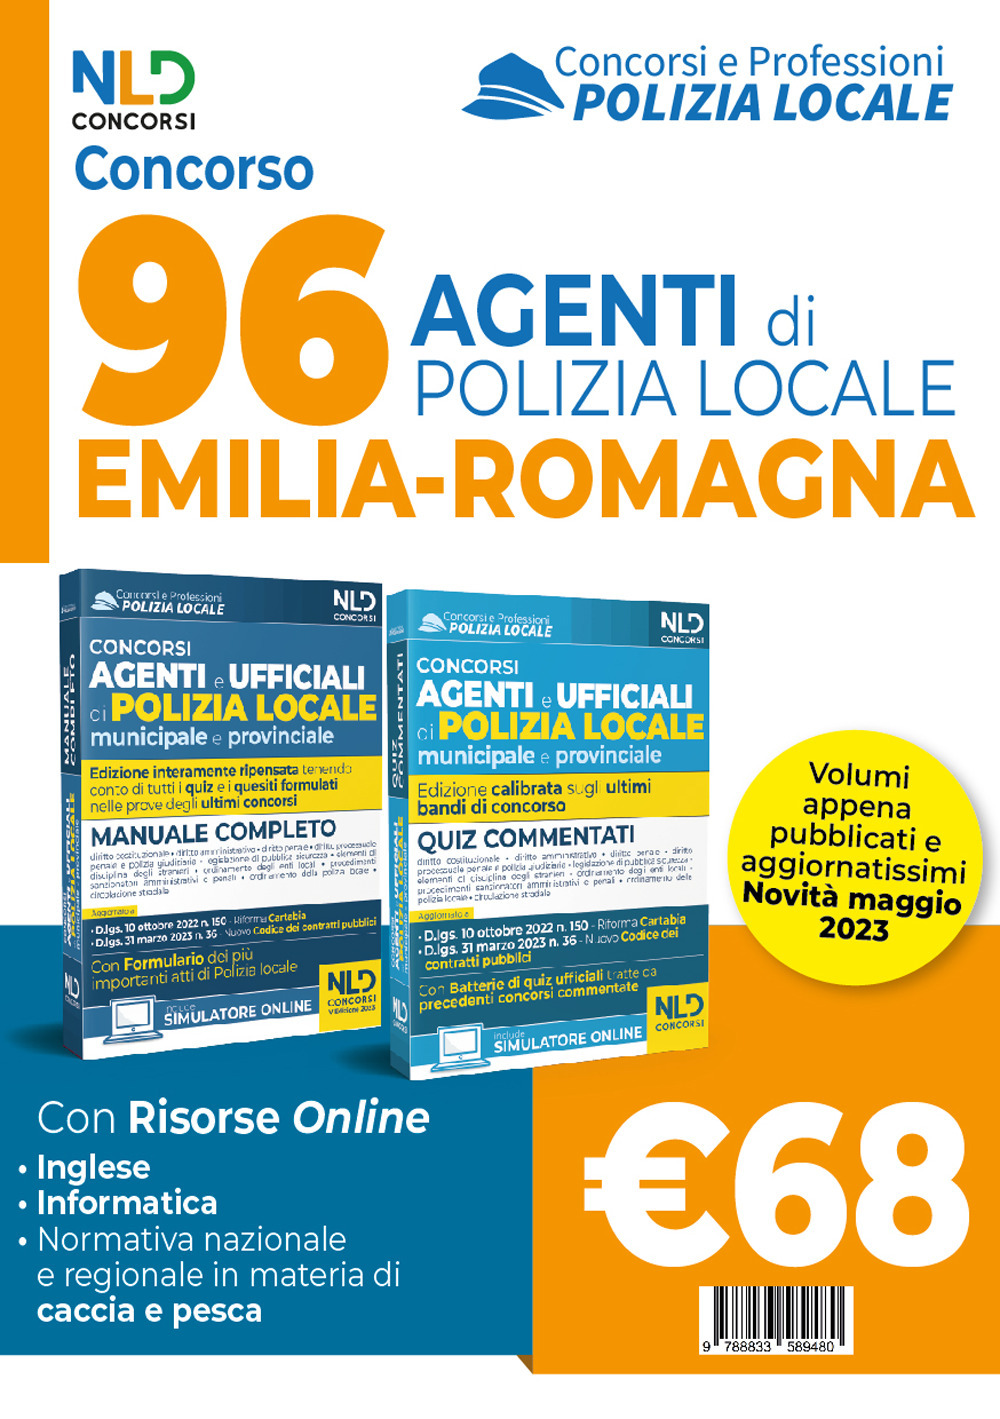 Concorso 96 Agenti Emilia Romagna. Manuale per i concorsi completo di tutte le materie + quiz commentati